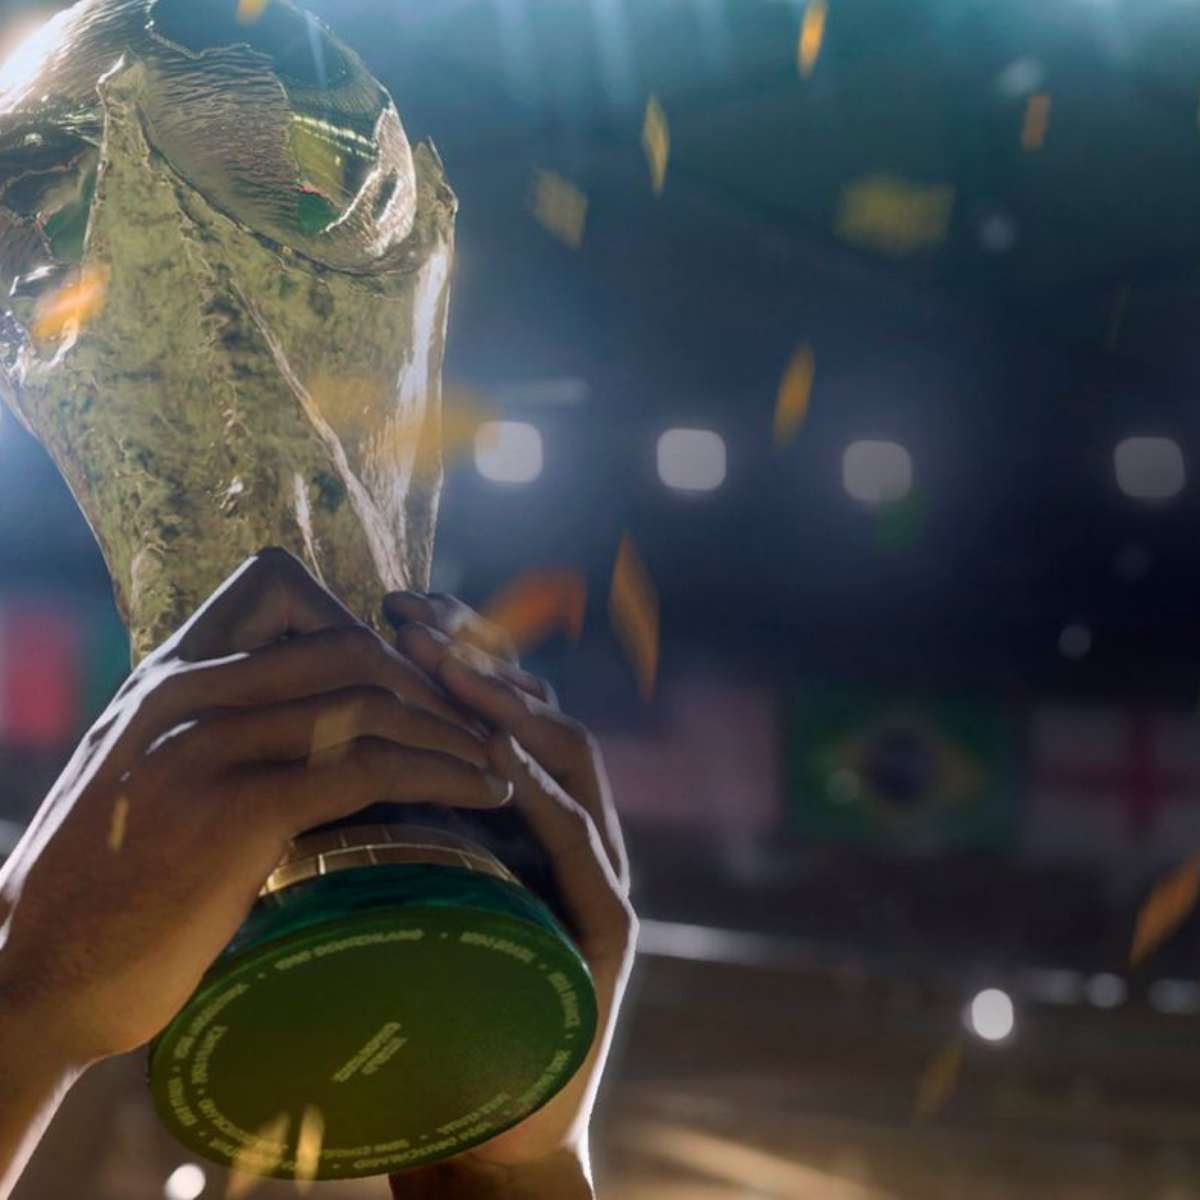 FIFA 22  Confira as notas de Neymar, Cristiano Ronaldo, Messi e mais -  Canaltech